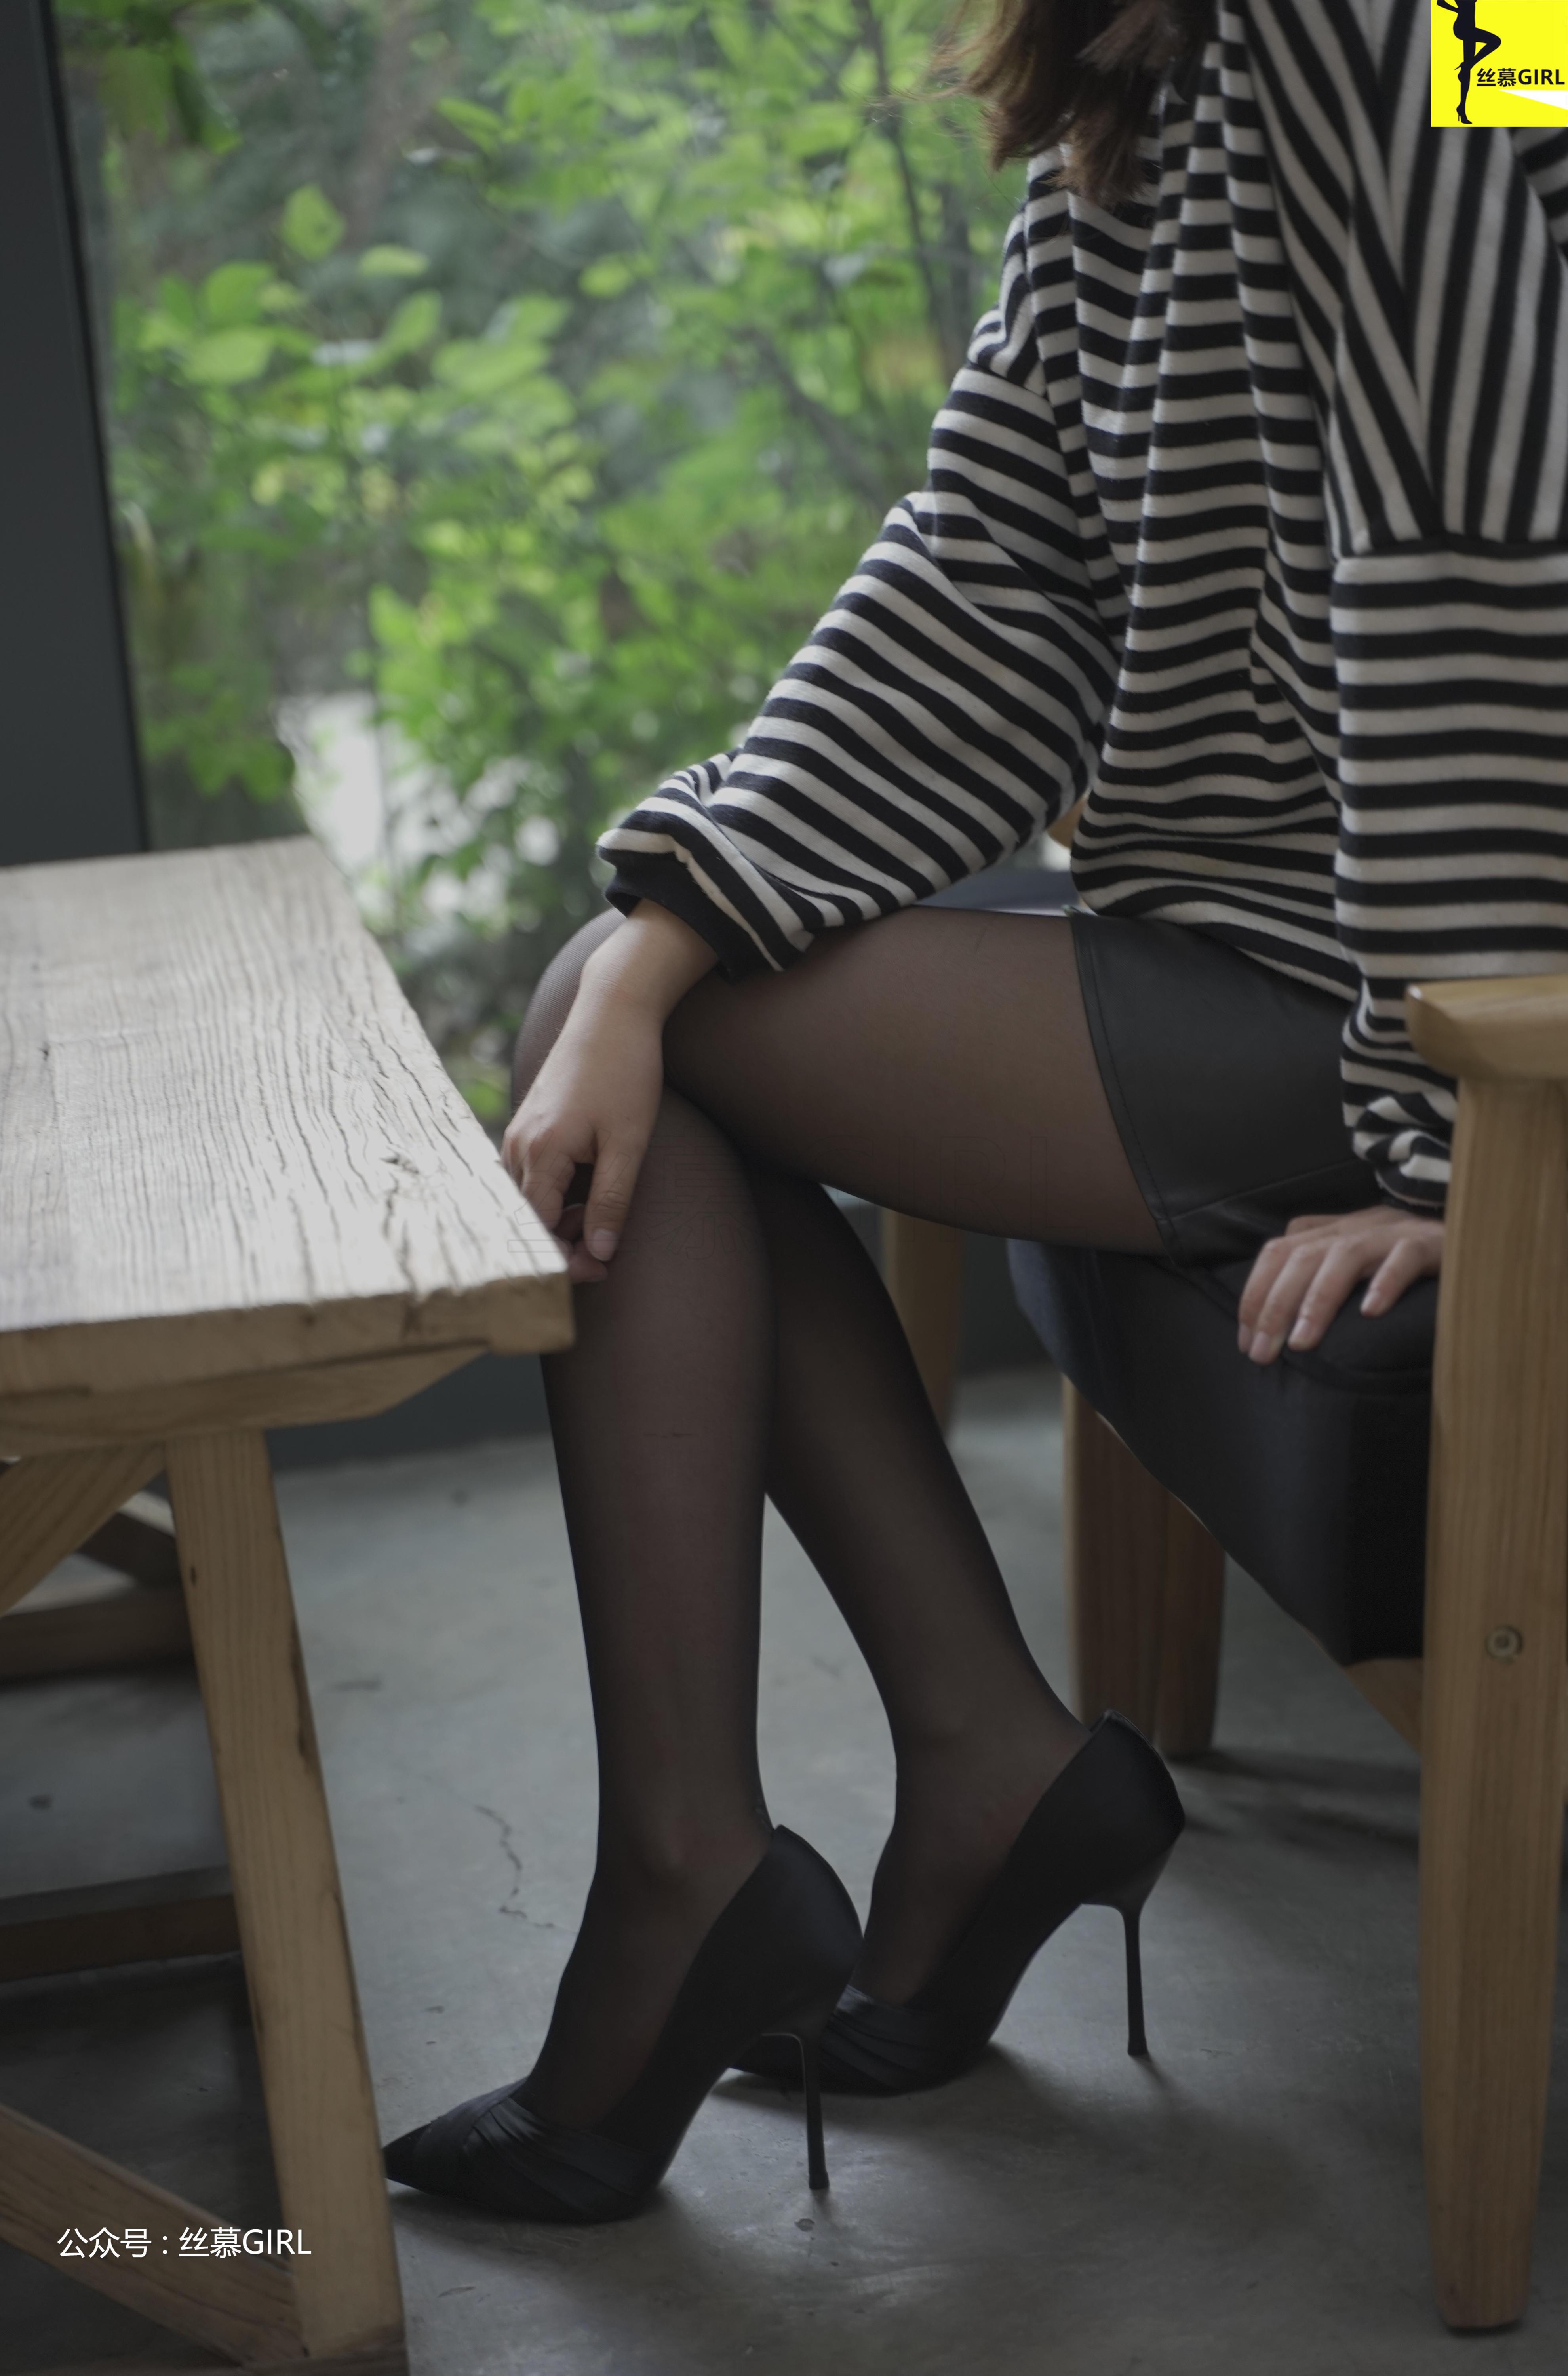 [丝慕GIRL]NO.025 《谁是谁的腿》 四月 黑色短裙加黑丝美腿性感写真集,23